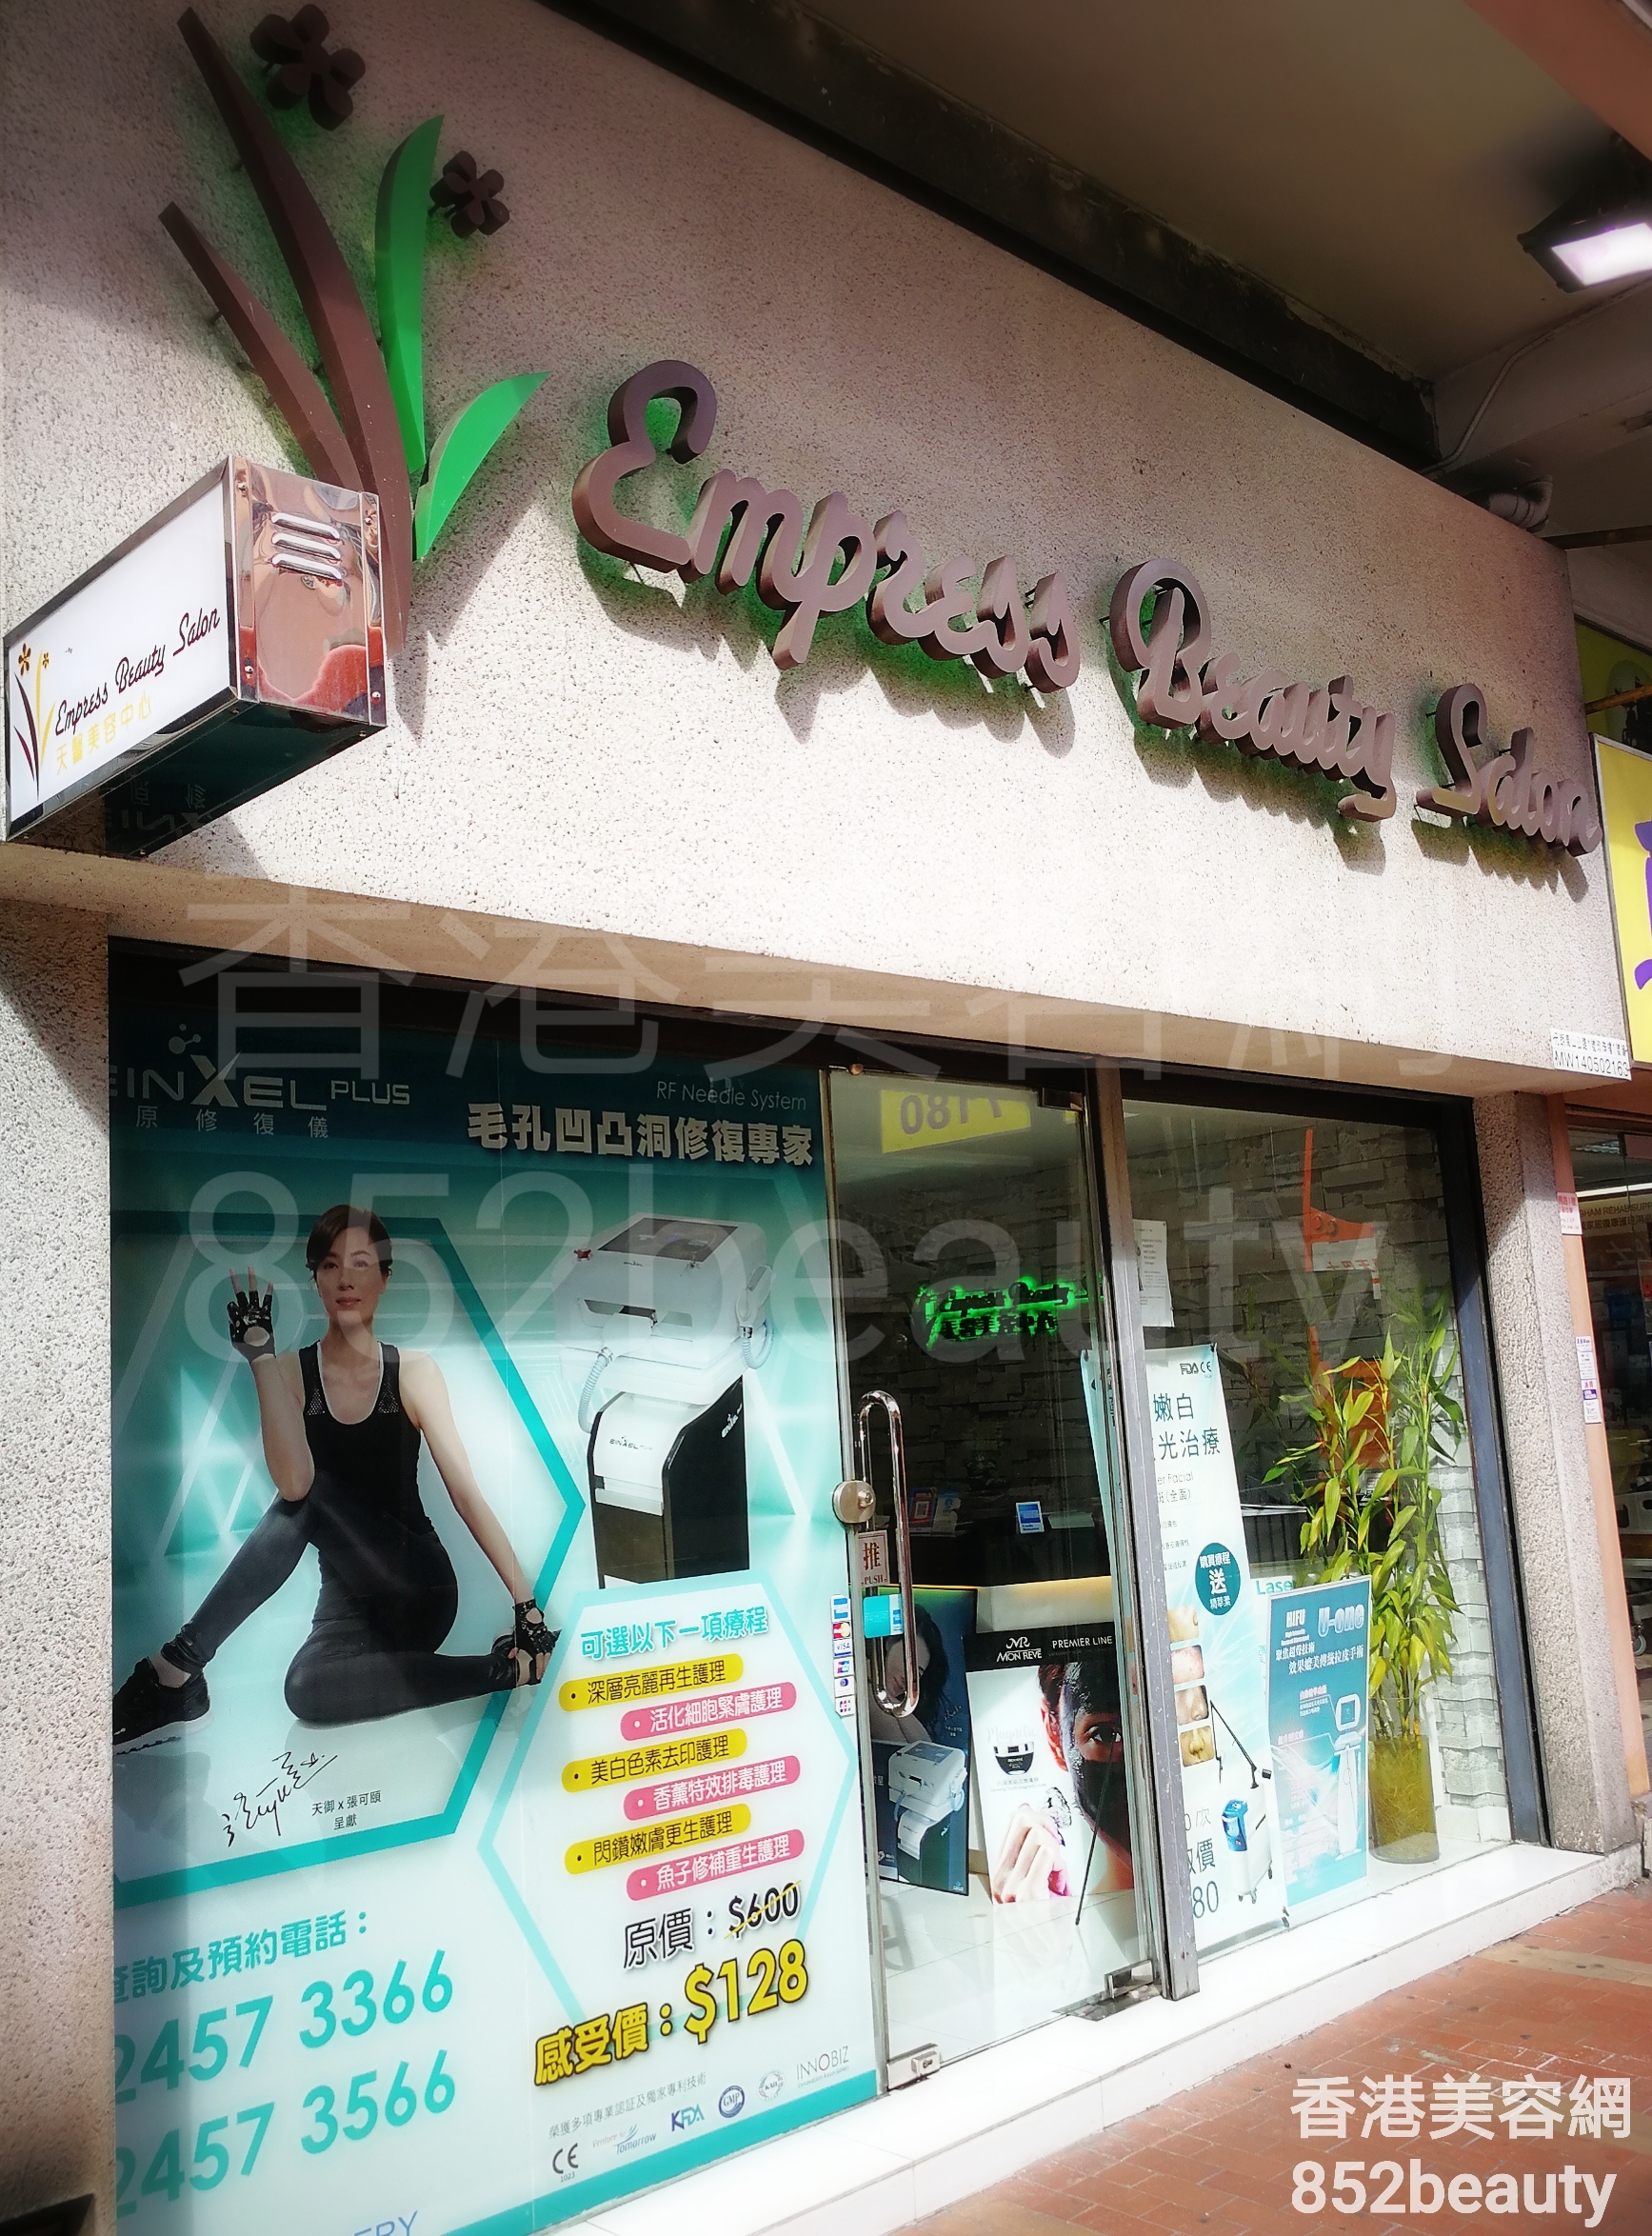 香港美容網 Hong Kong Beauty Salon 美容院 / 美容師: Empress Beauty Salon 天馨美容中心